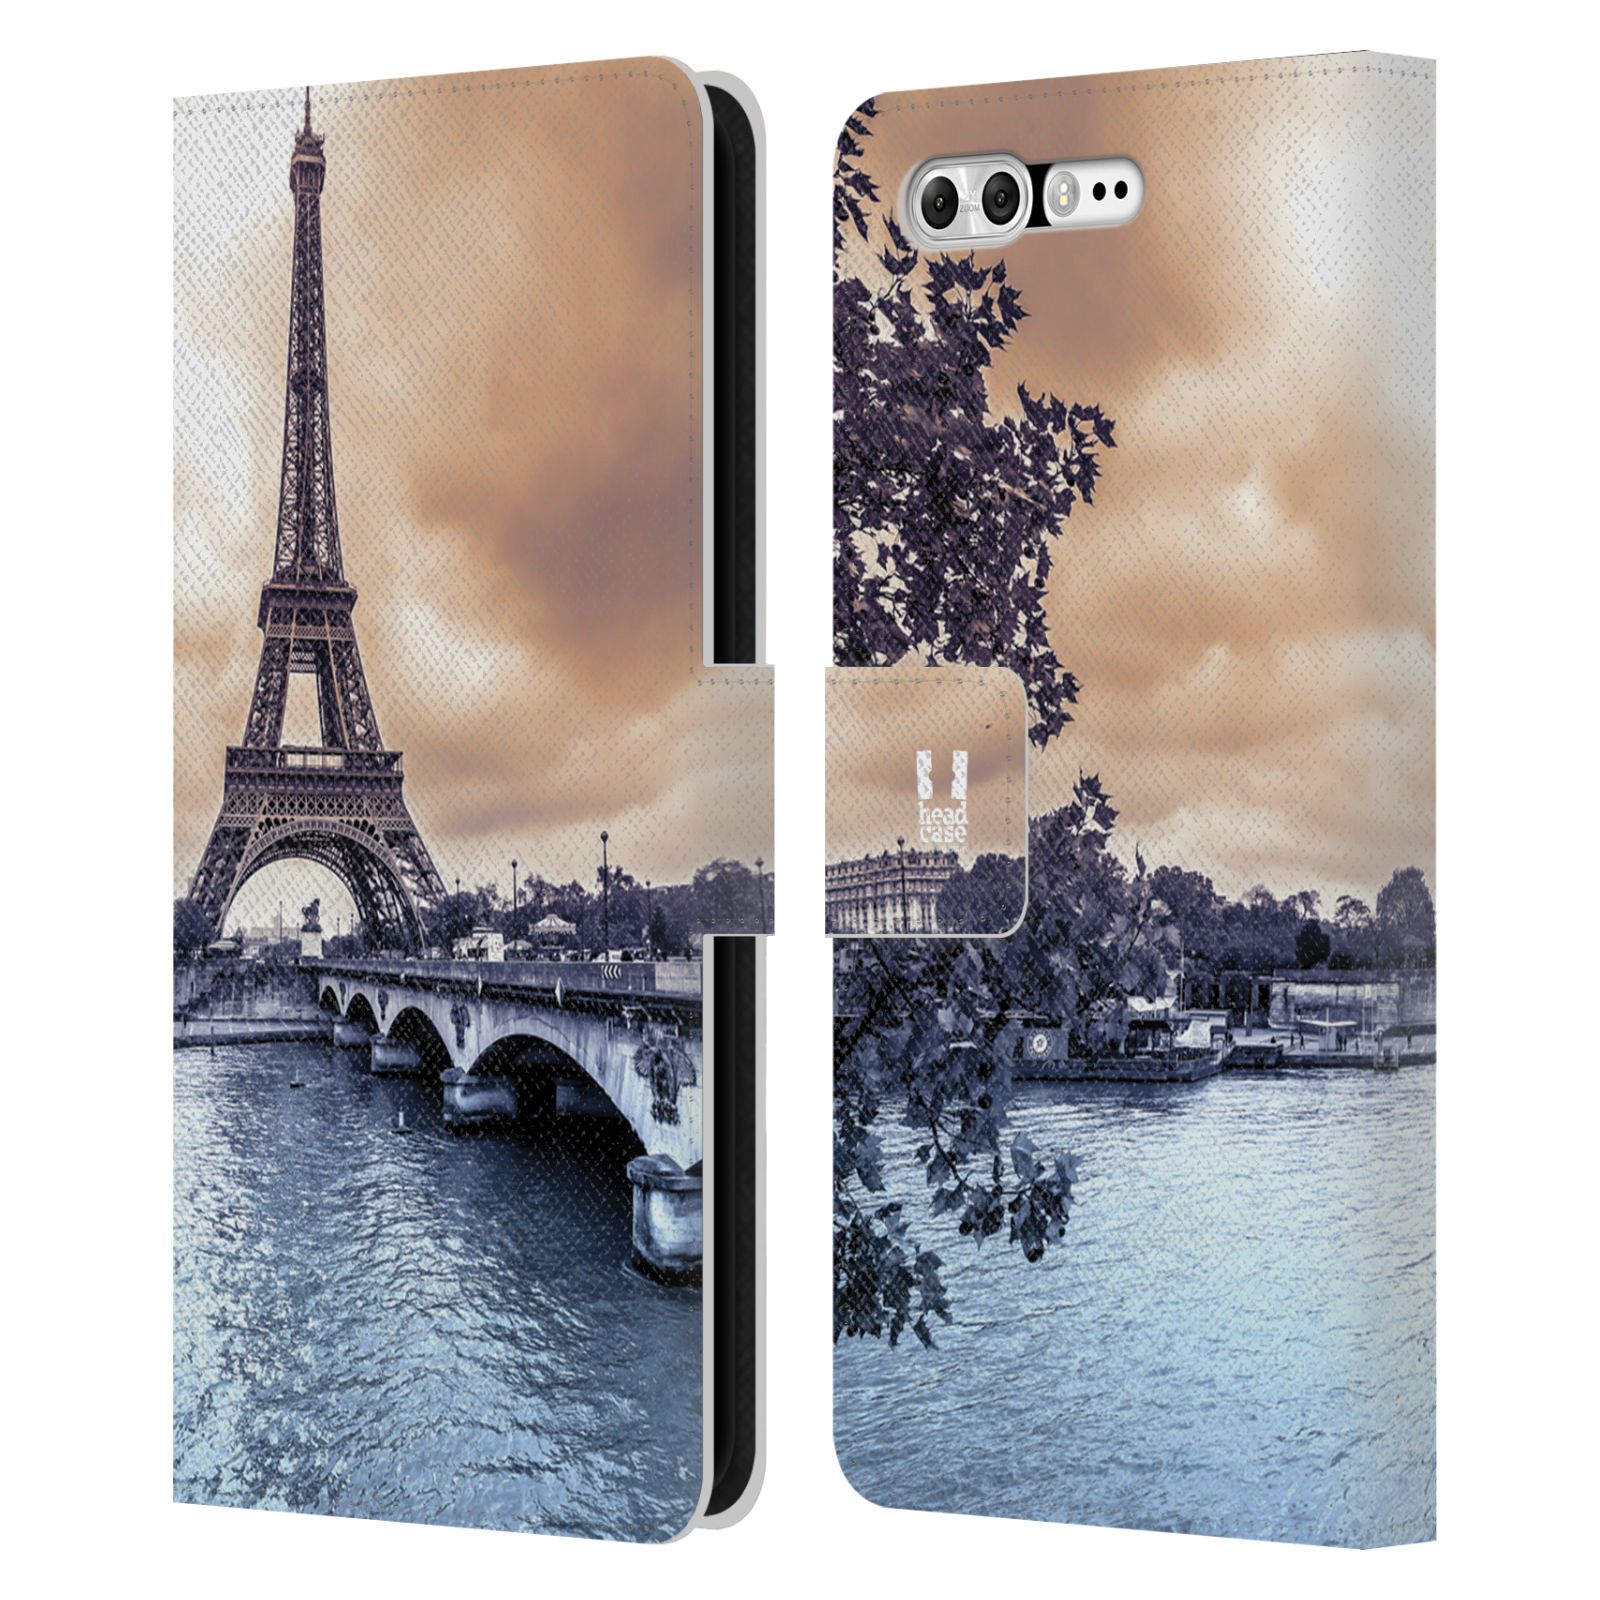 Pouzdro na mobil Asus Zenfone 4 Pro ZS551KL - Head Case - Paříž Eiffelova věž